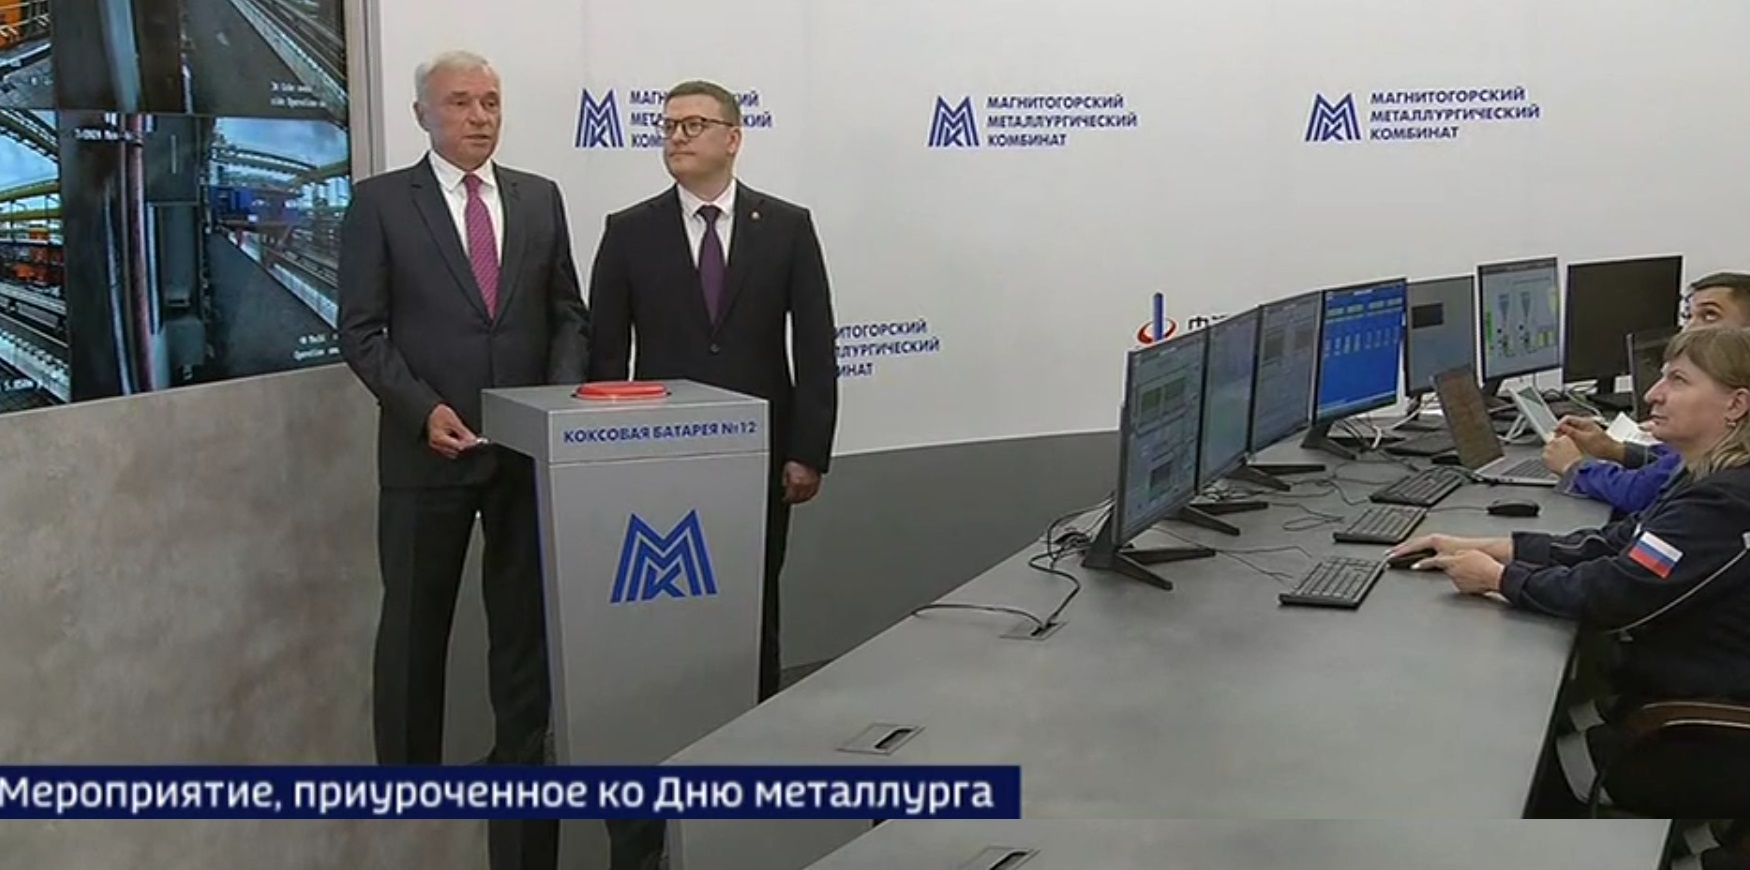 Владимир Путин дал старт новой коксовой батарее ММК и третьей очереди парка "Притяжение"